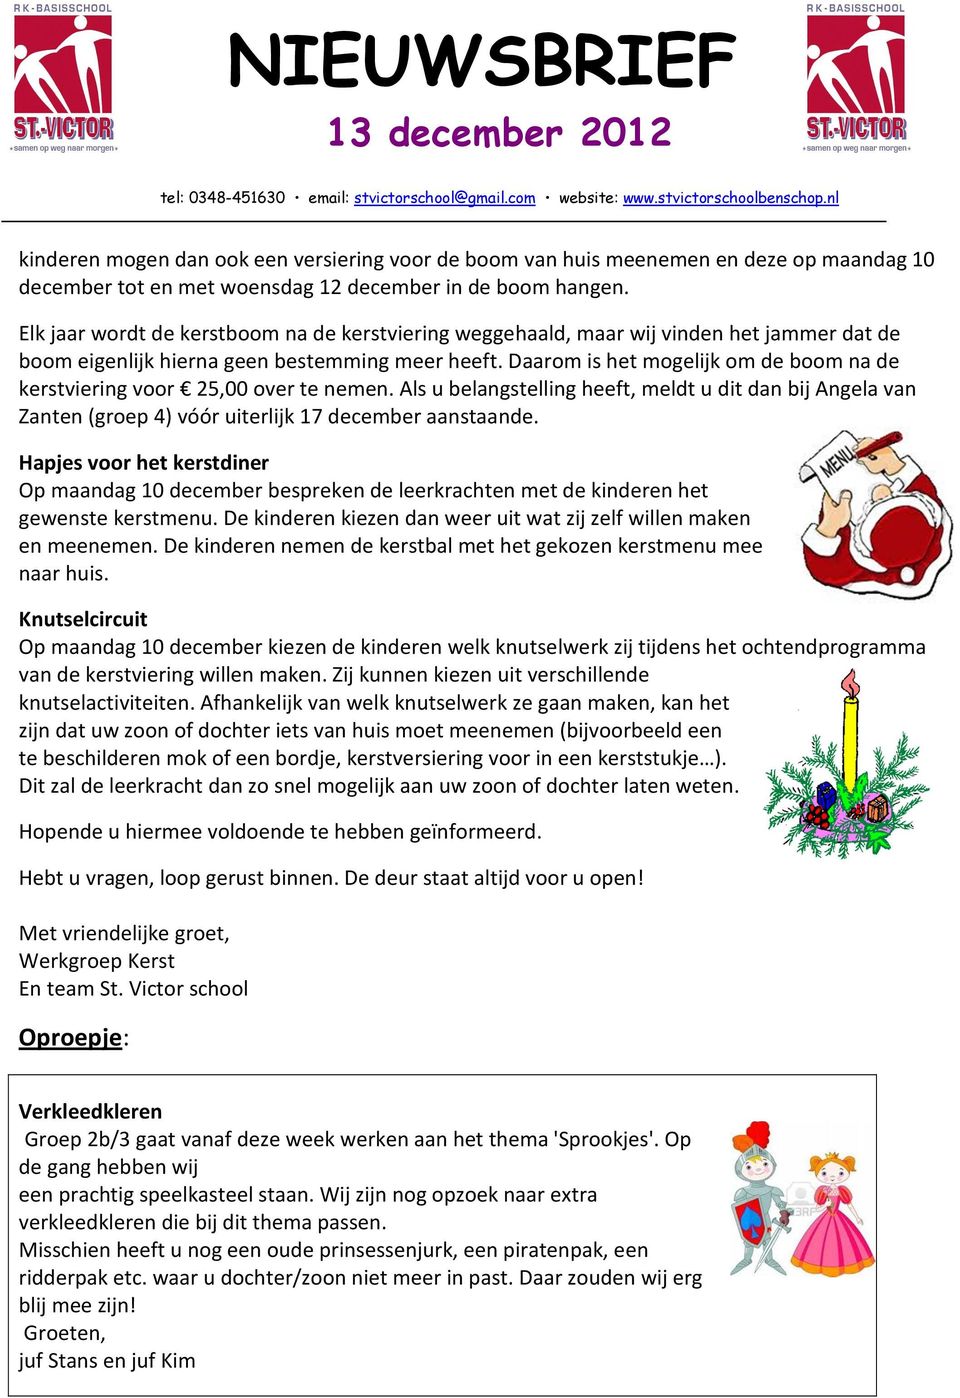 Daarom is het mogelijk om de boom na de kerstviering voor 25,00 over te nemen. Als u belangstelling heeft, meldt u dit dan bij Angela van Zanten (groep 4) vóór uiterlijk 17 december aanstaande.